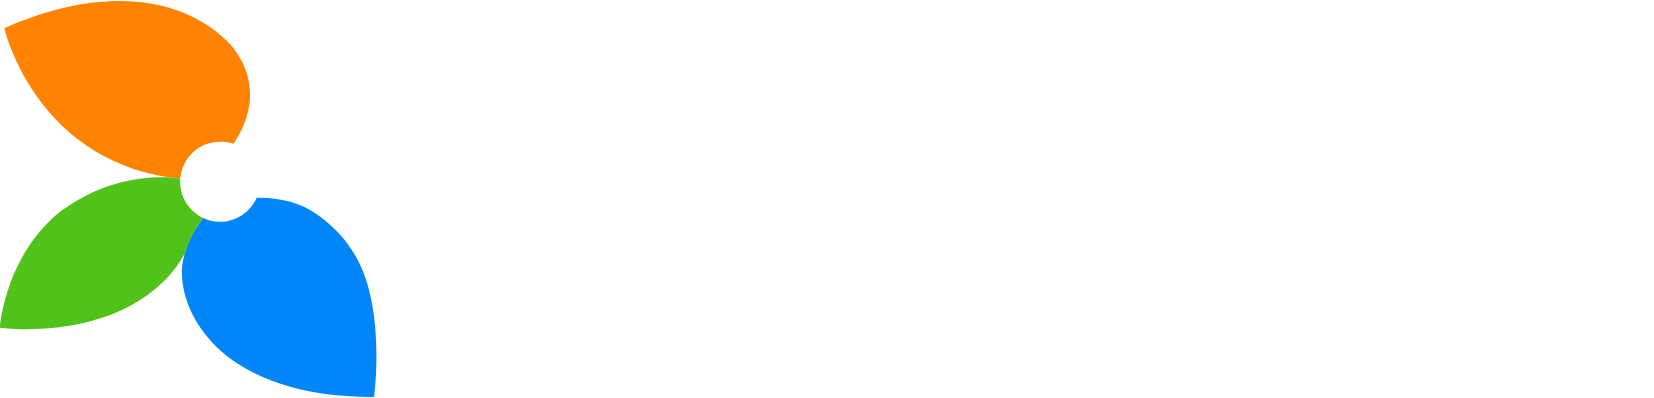 IDP Education logo grand pour les fonds sombres (PNG transparent)